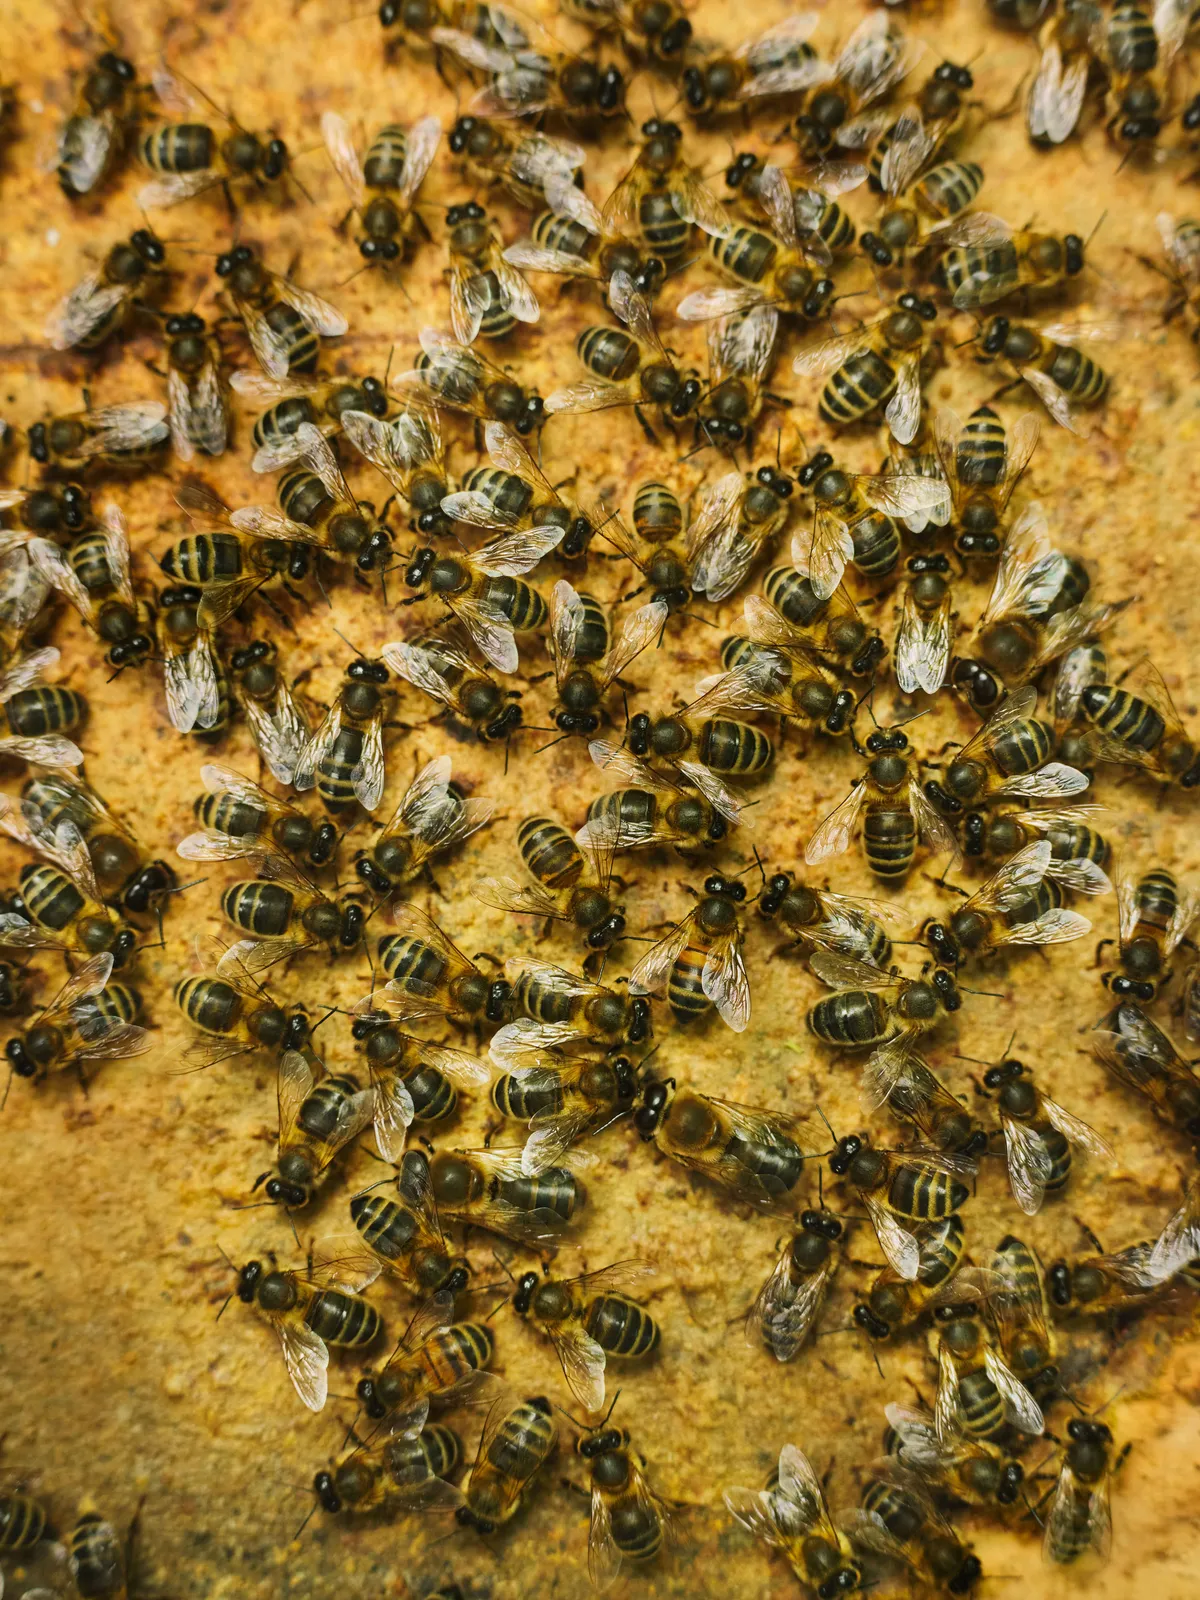 Honeybees at work in Matt Somerville's bee hives